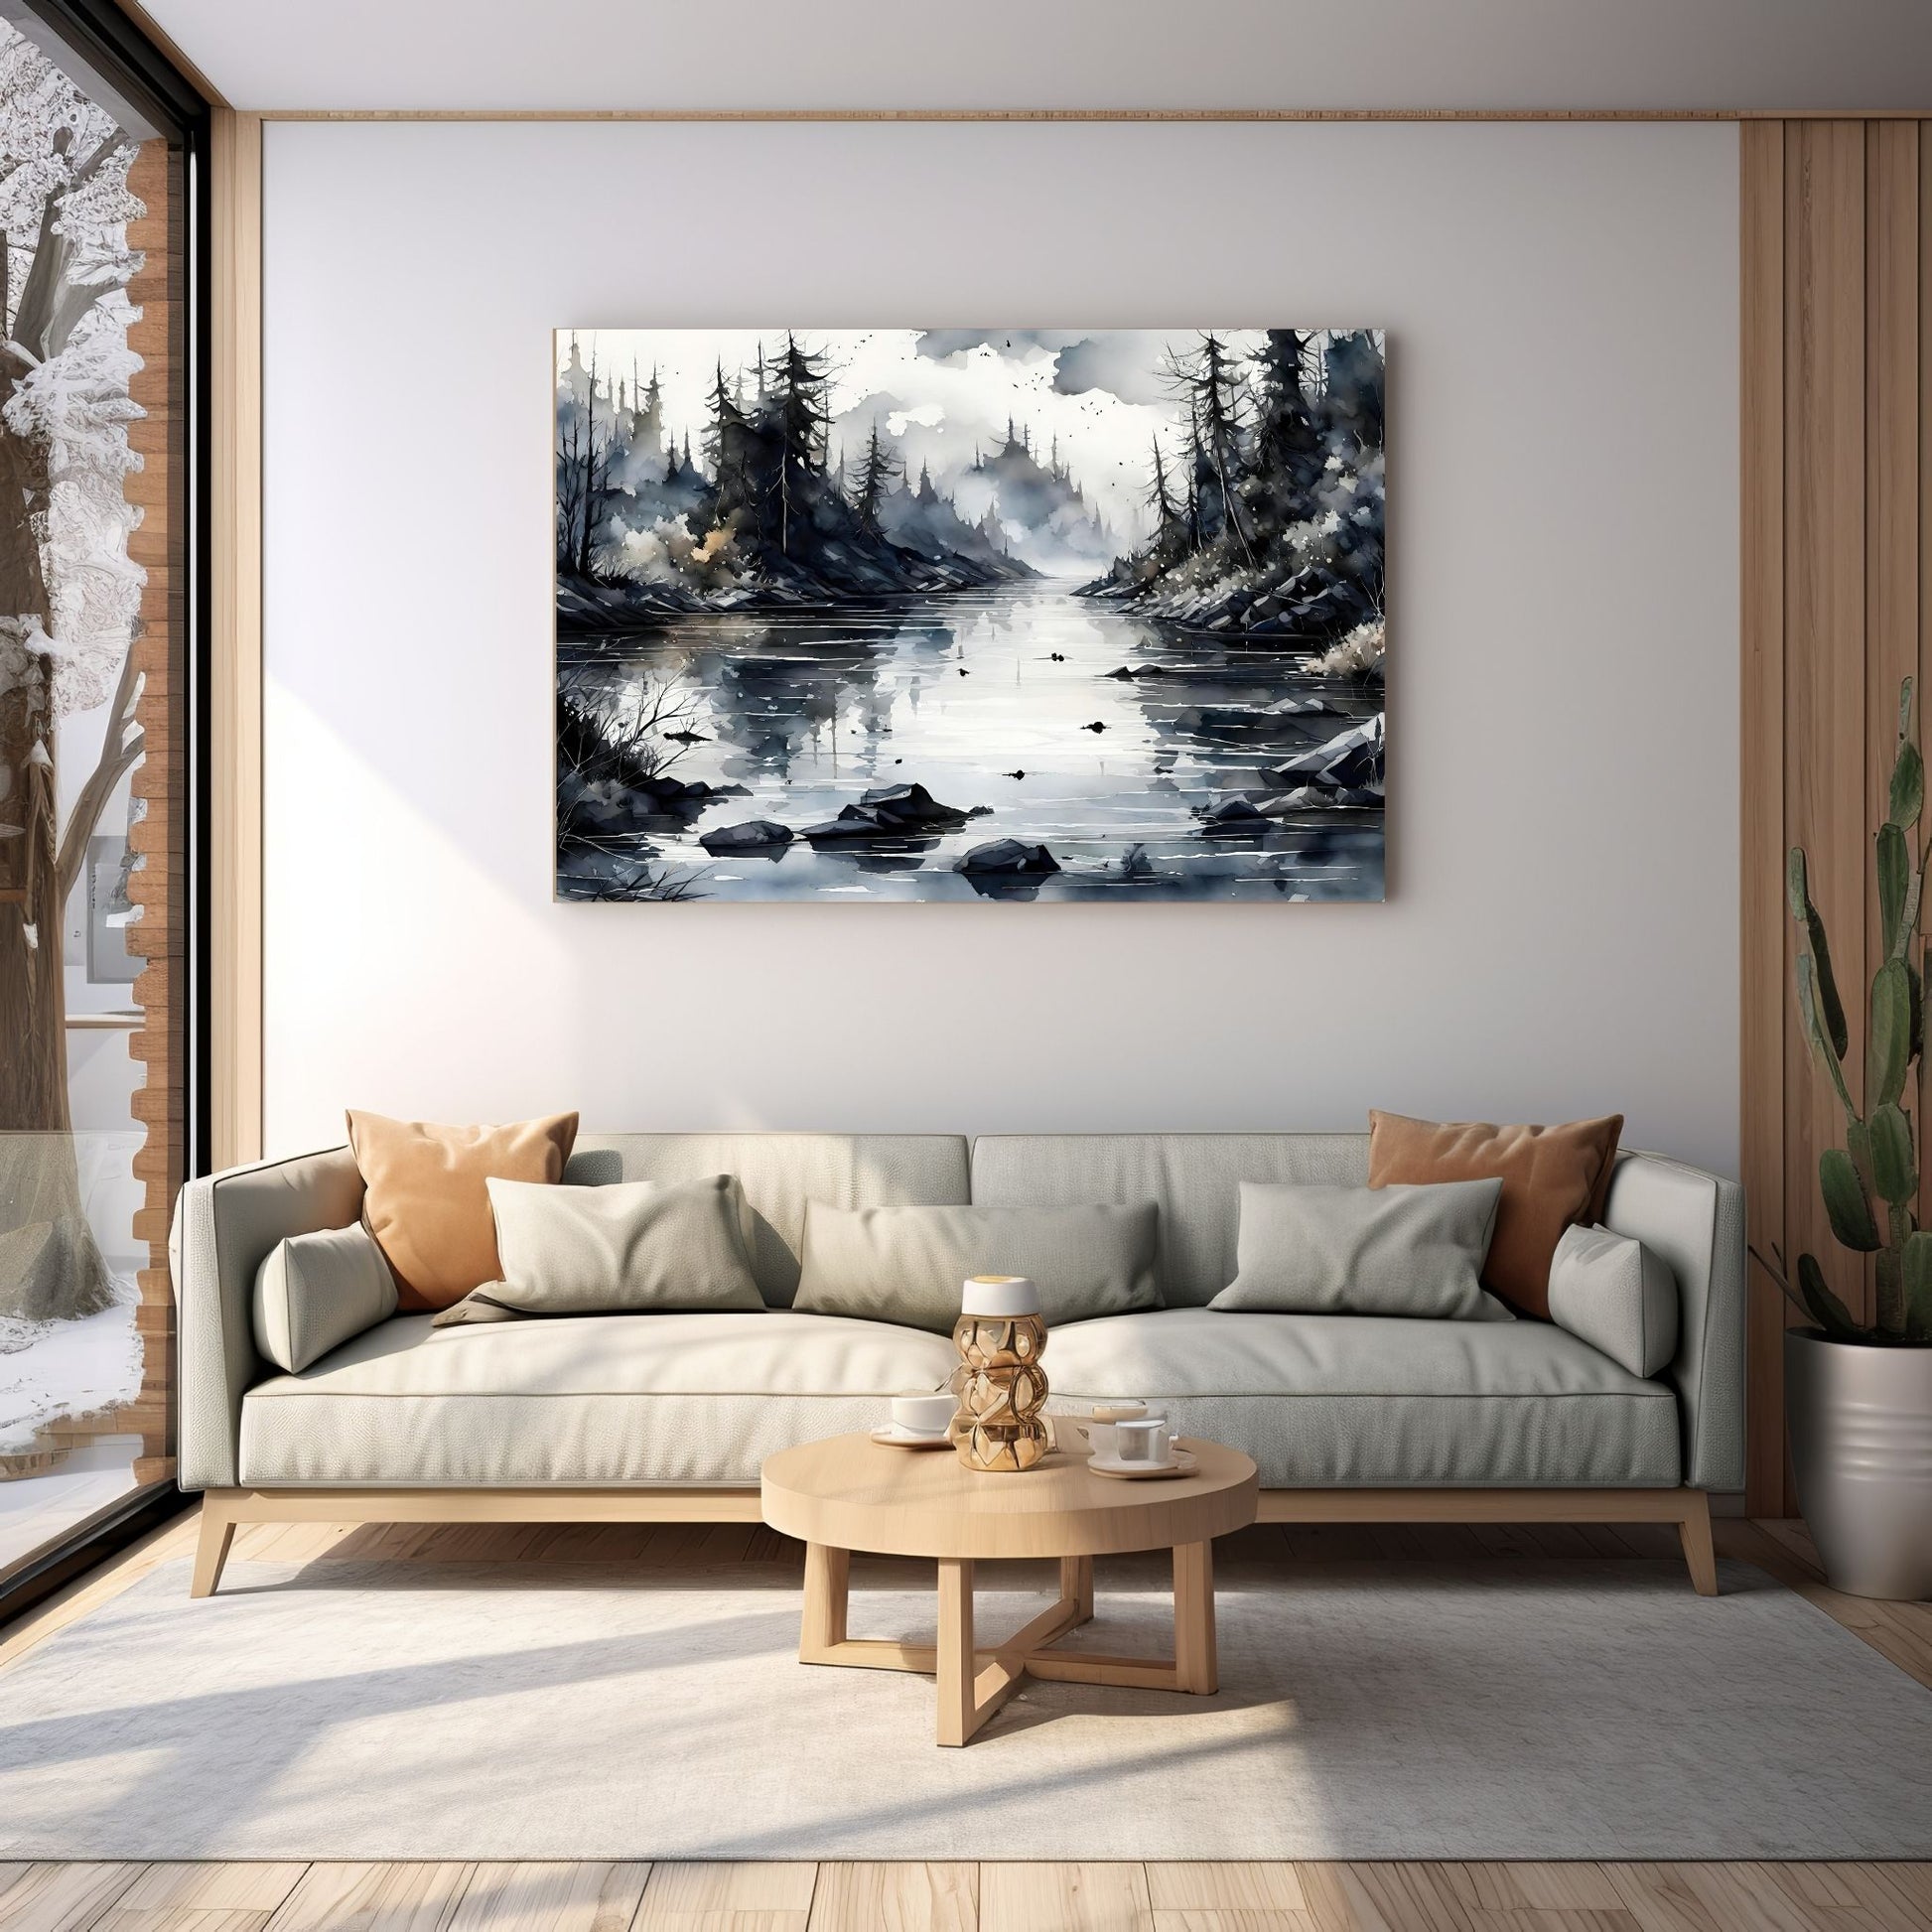 Digitalt kunstmaleri i akvarell som fanger essensen av vinterscenene med et sjarmerende landskap der snøfnugg danser i luften. Illustrasjonsfoto som viser motivet på lerret som henger over en sofa.